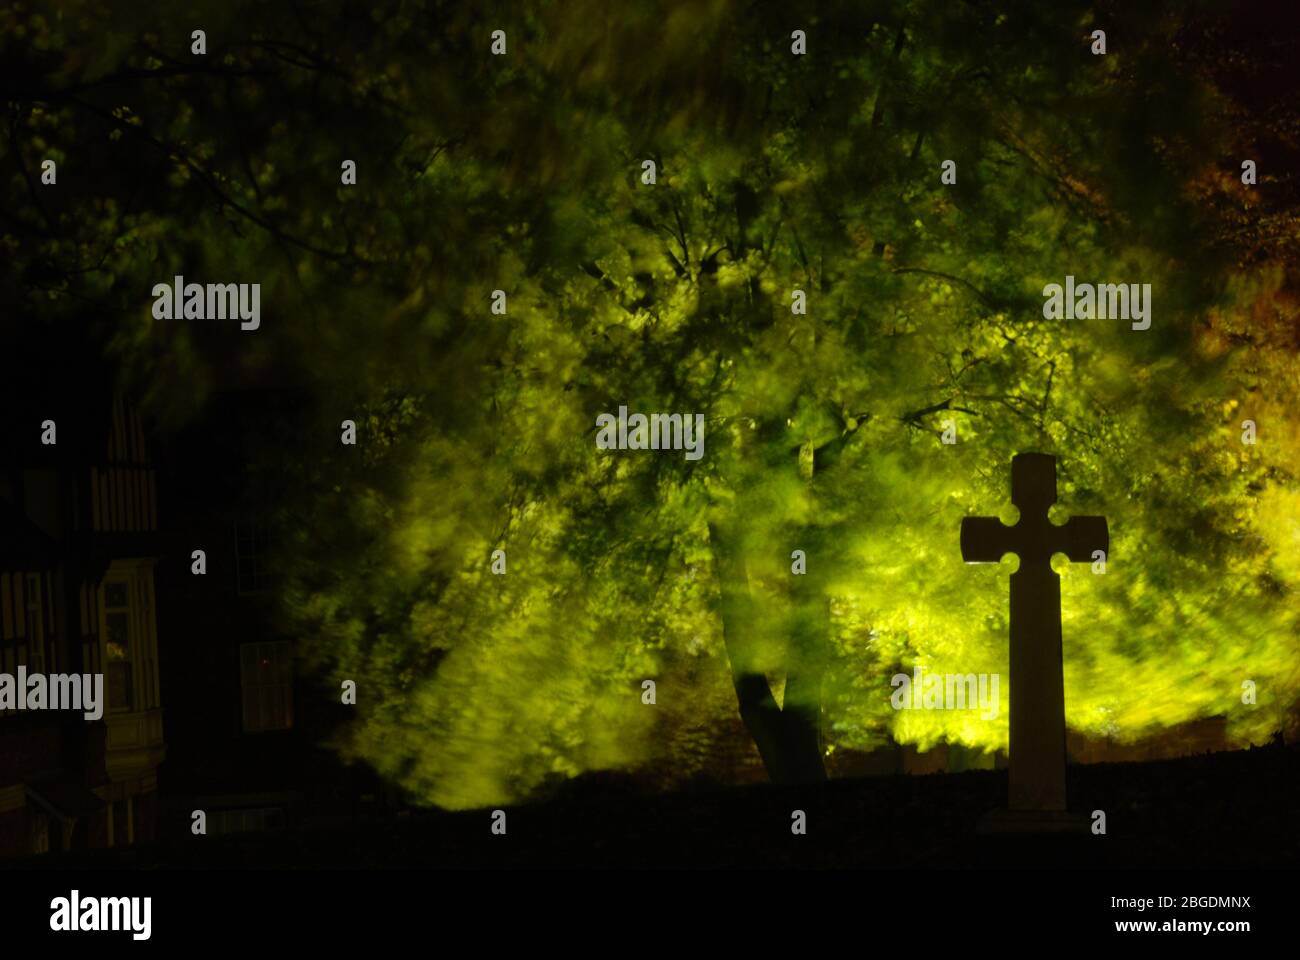 Immagine notturna della croce solitaria nella silhouette contro le foglie di albero illuminate sul retro che mostrano un movimento sfocato da una leggera brezza Foto Stock